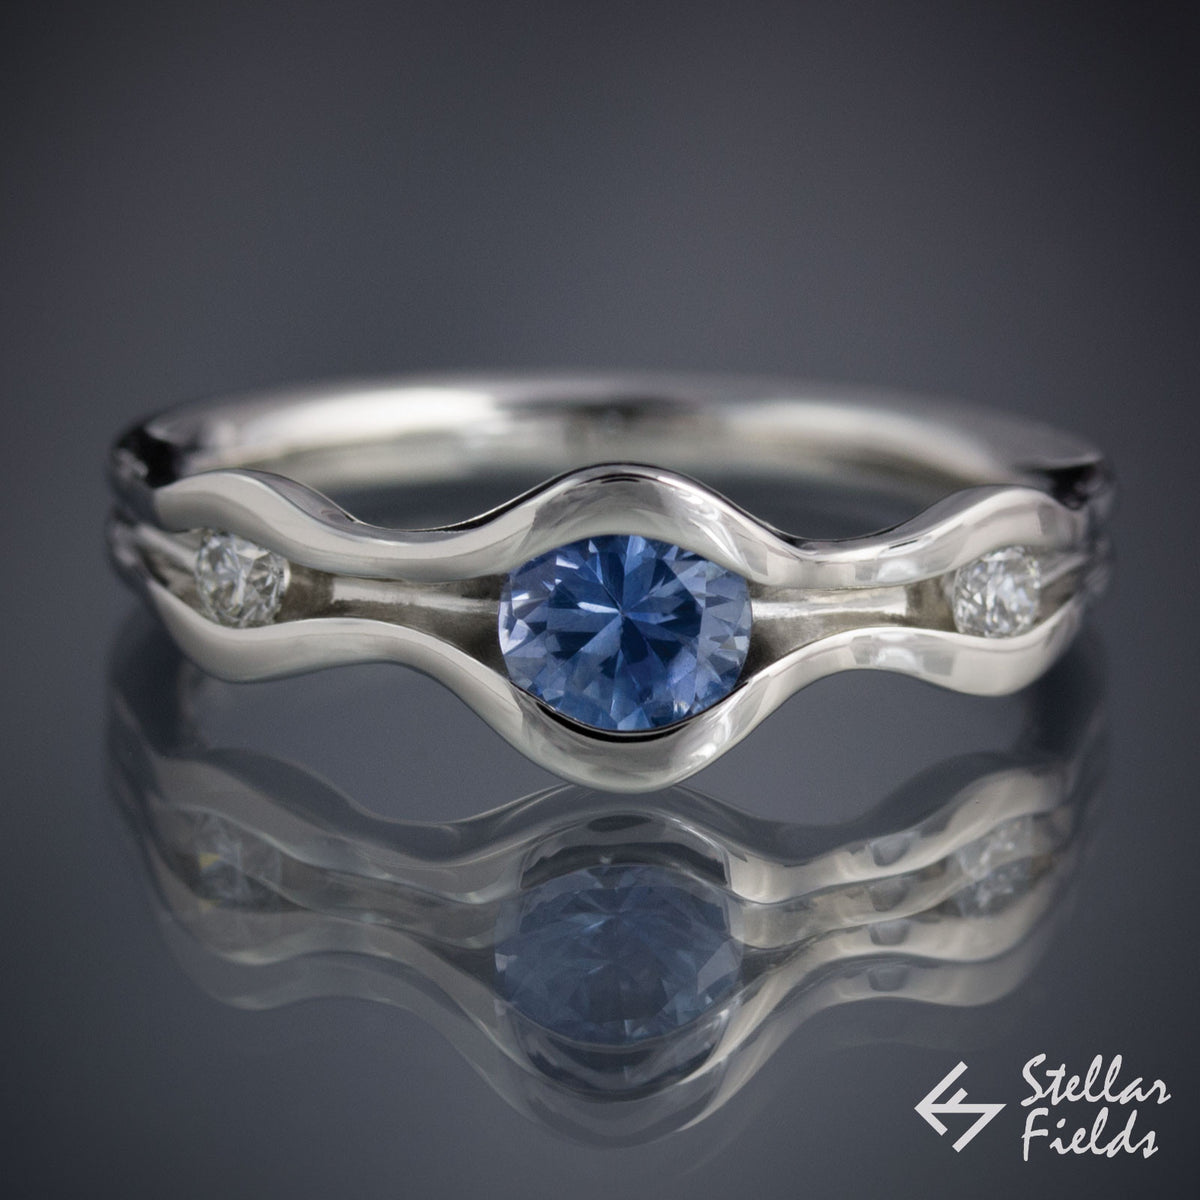 Montana Sapphire 3 Stone Engagement Ring Minimal Modern 14k White Gold Platinum StellarFields